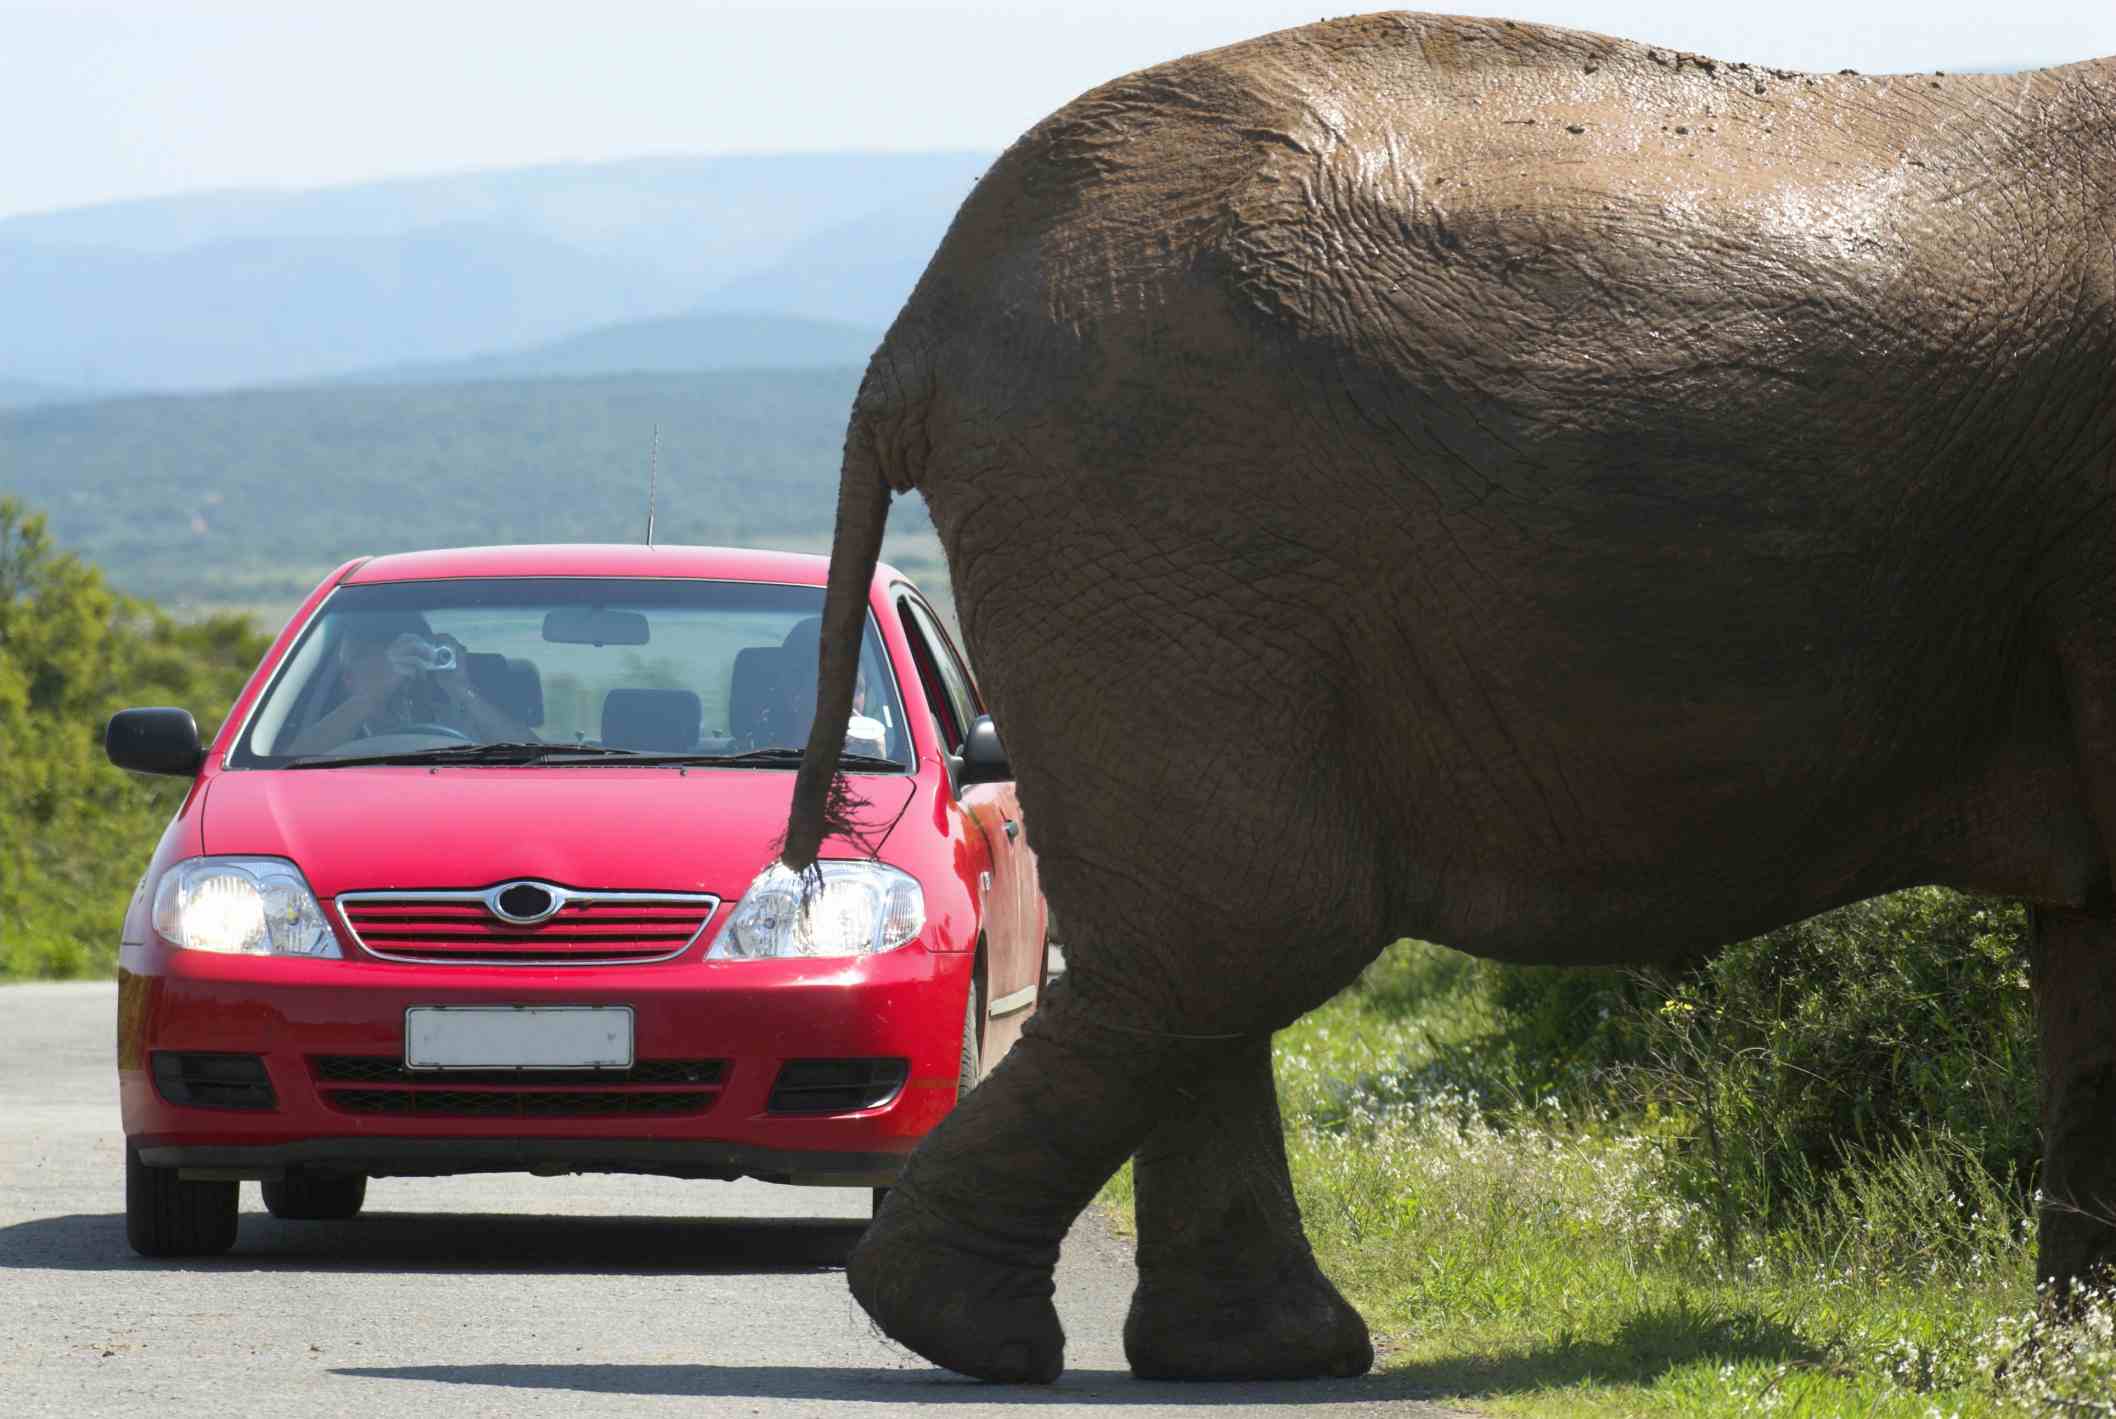 slon přes silnici před autem